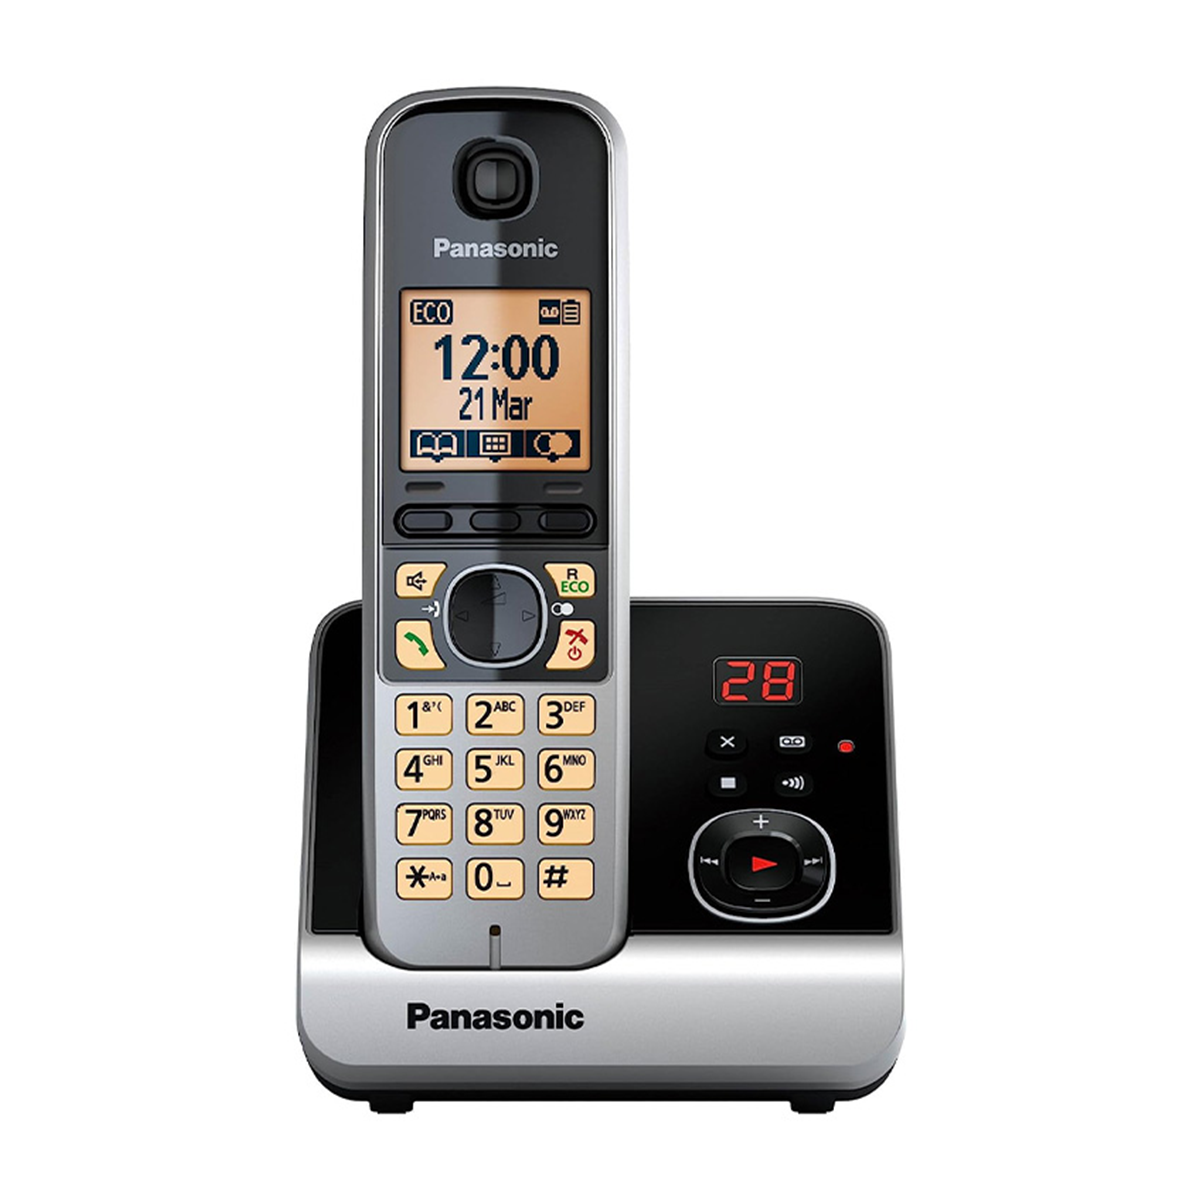 قیمت تلفن بی سیم پاناسونیک مدل KX-TG6721 مشخصات